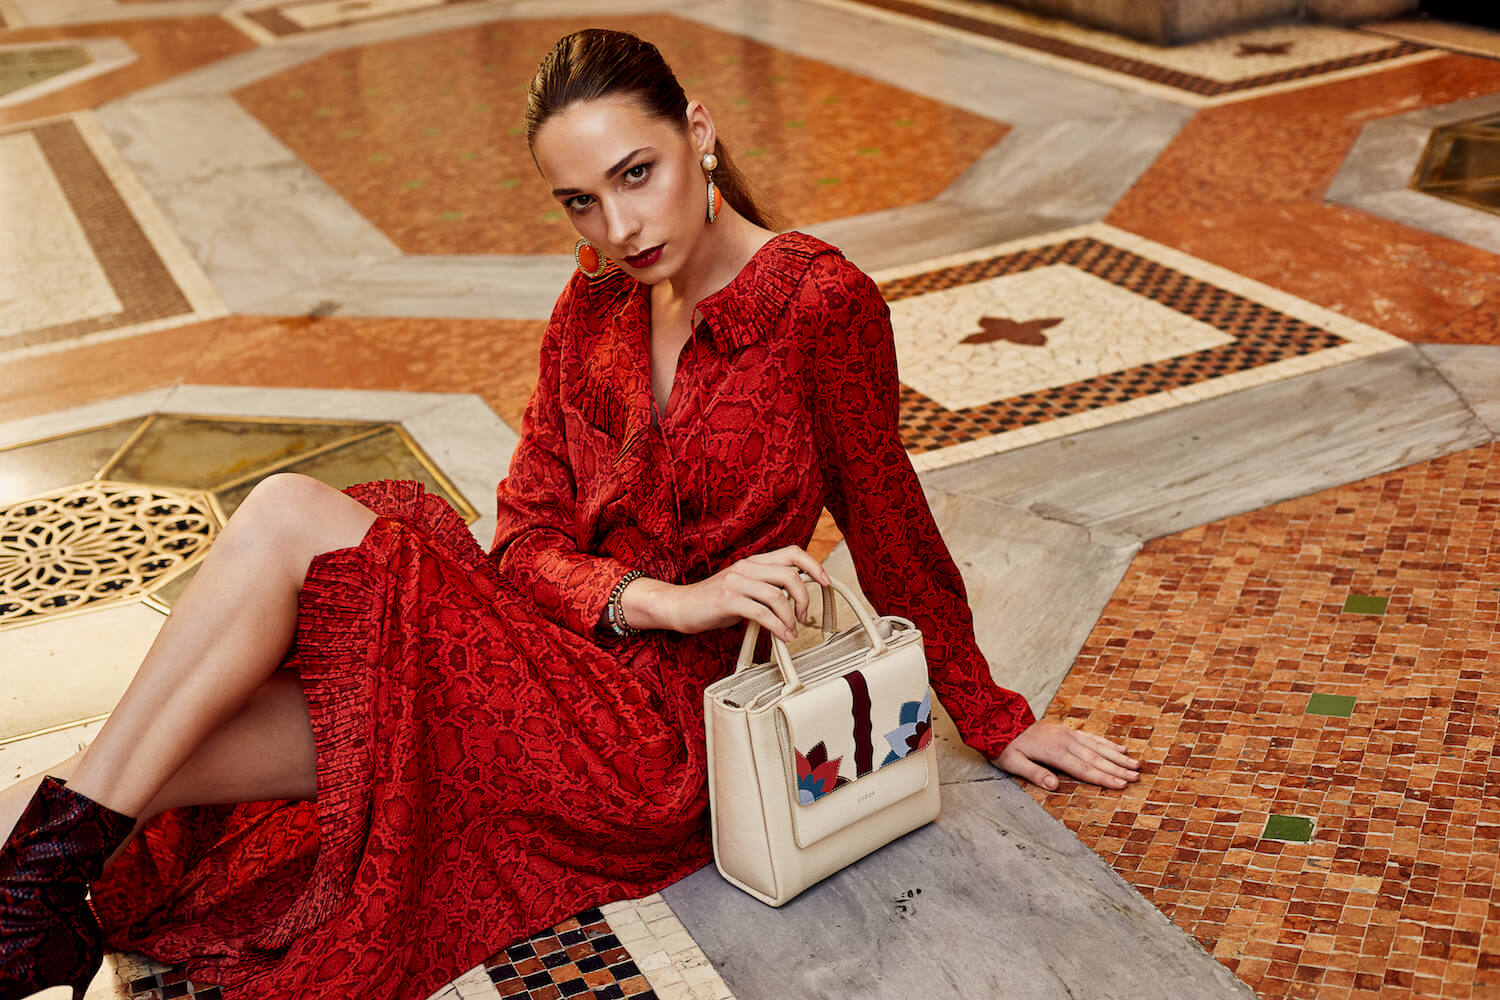 Na zdjeciu widzimy mloda kobieta ubrana w czerwona sukienke z bezowa wzorzysta torebka siedzi ona na kolorowym okazalym dywanie